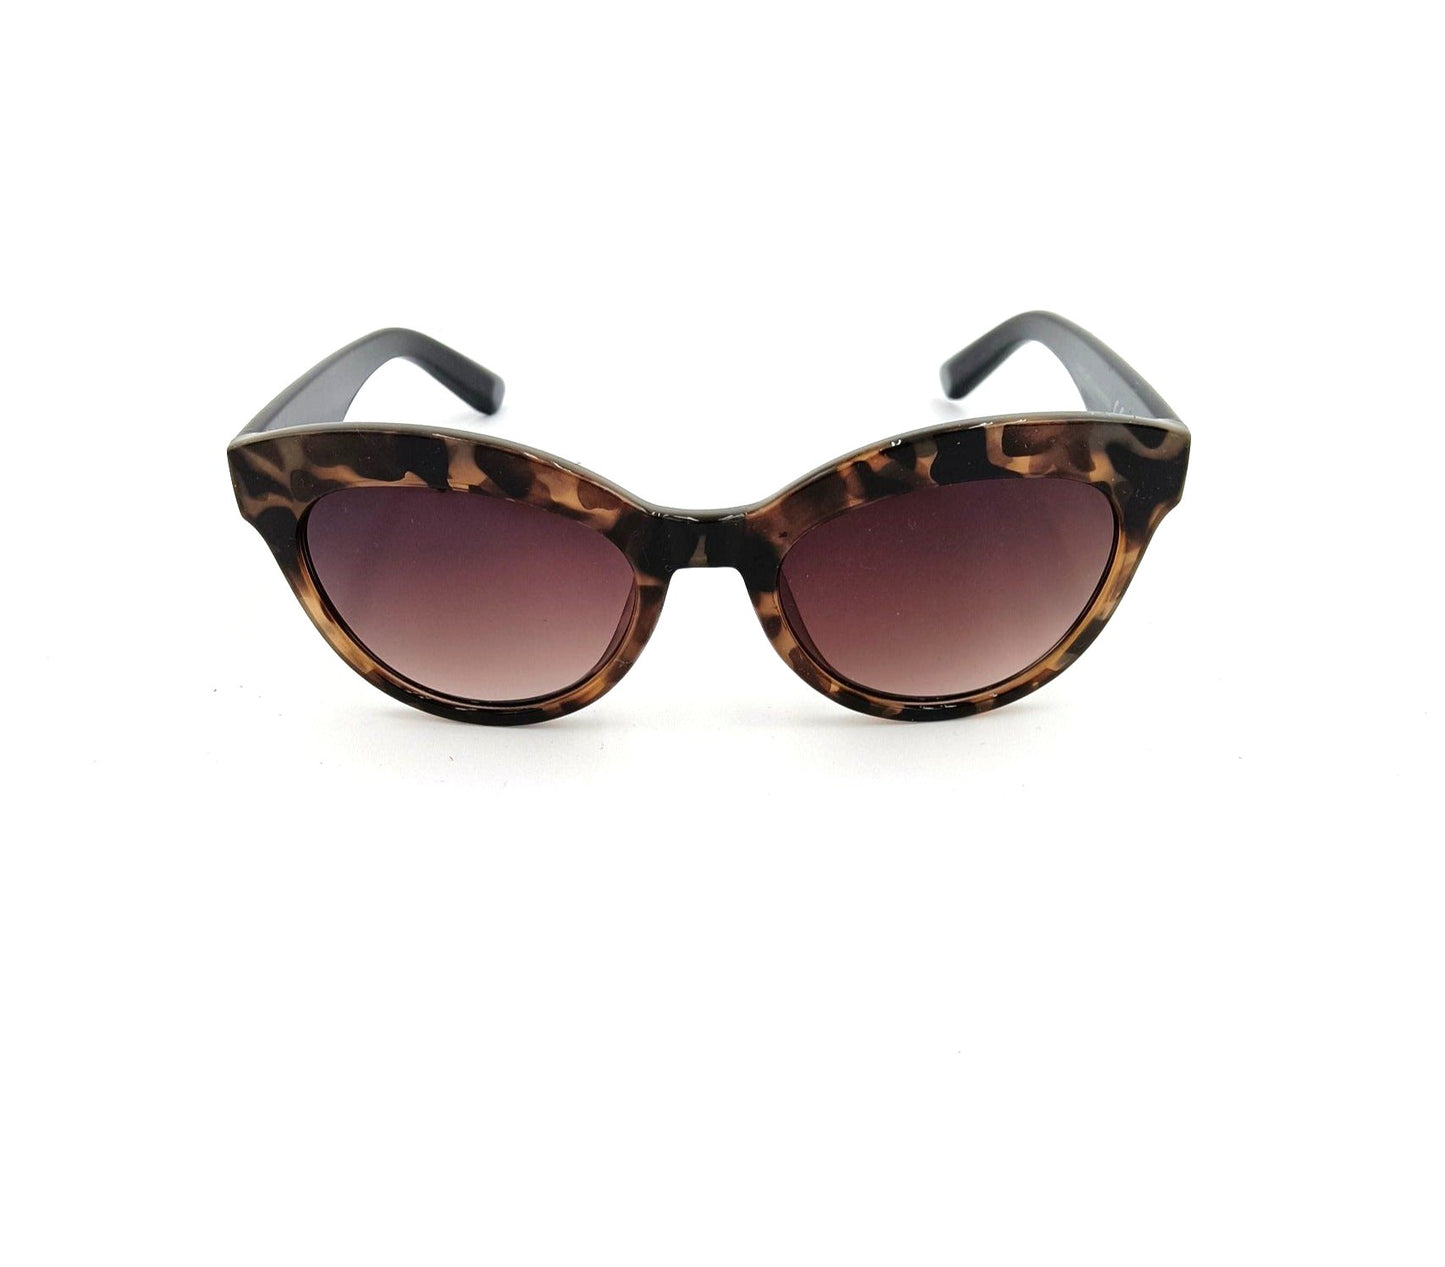 Qoolst Caty women's sunglasses